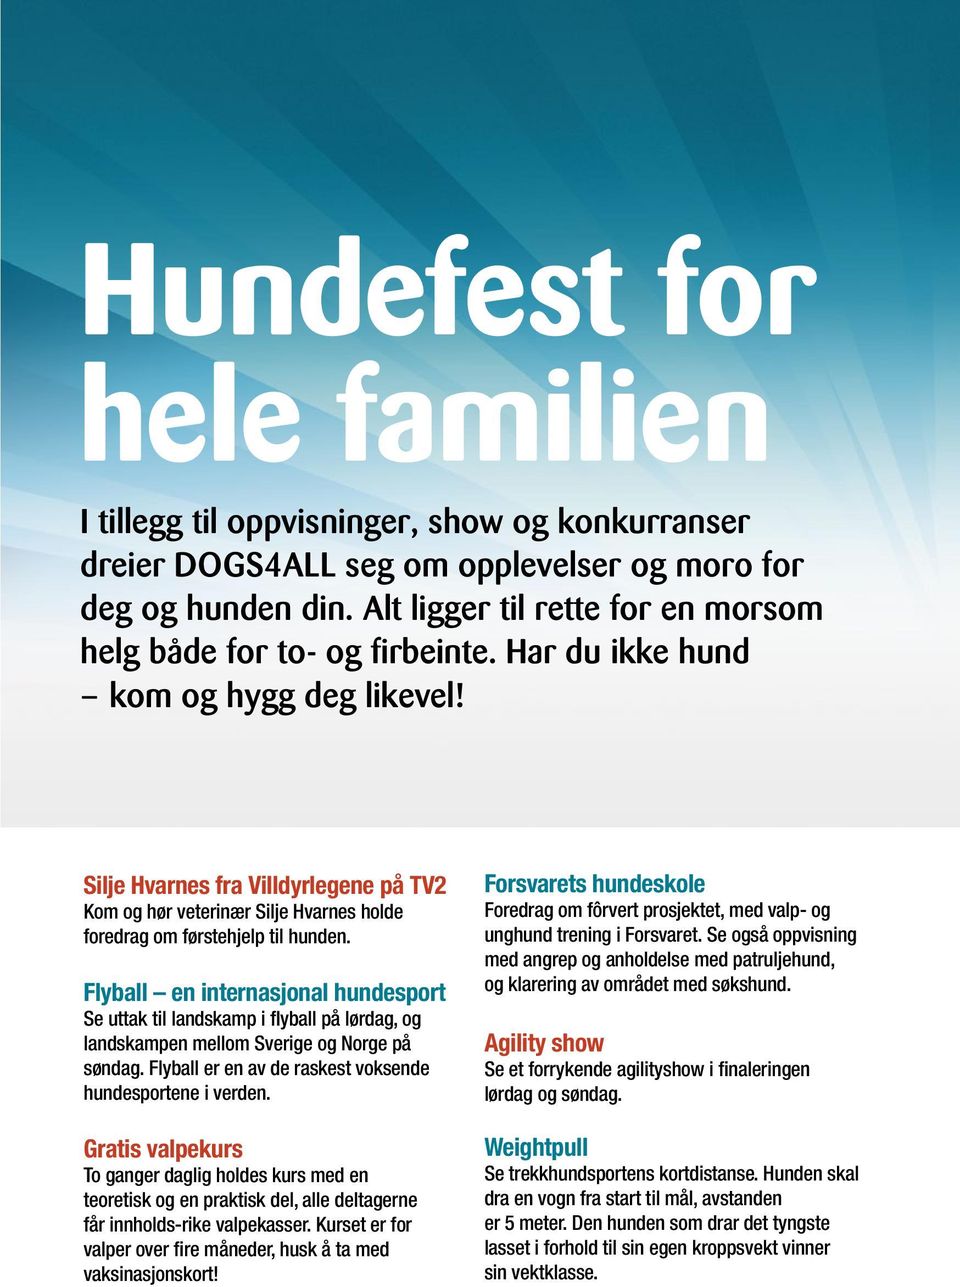 Silje Hvarnes fra Villdyrlegene på TV2 Kom og hør veterinær Silje Hvarnes holde foredrag om førstehjelp til hunden.